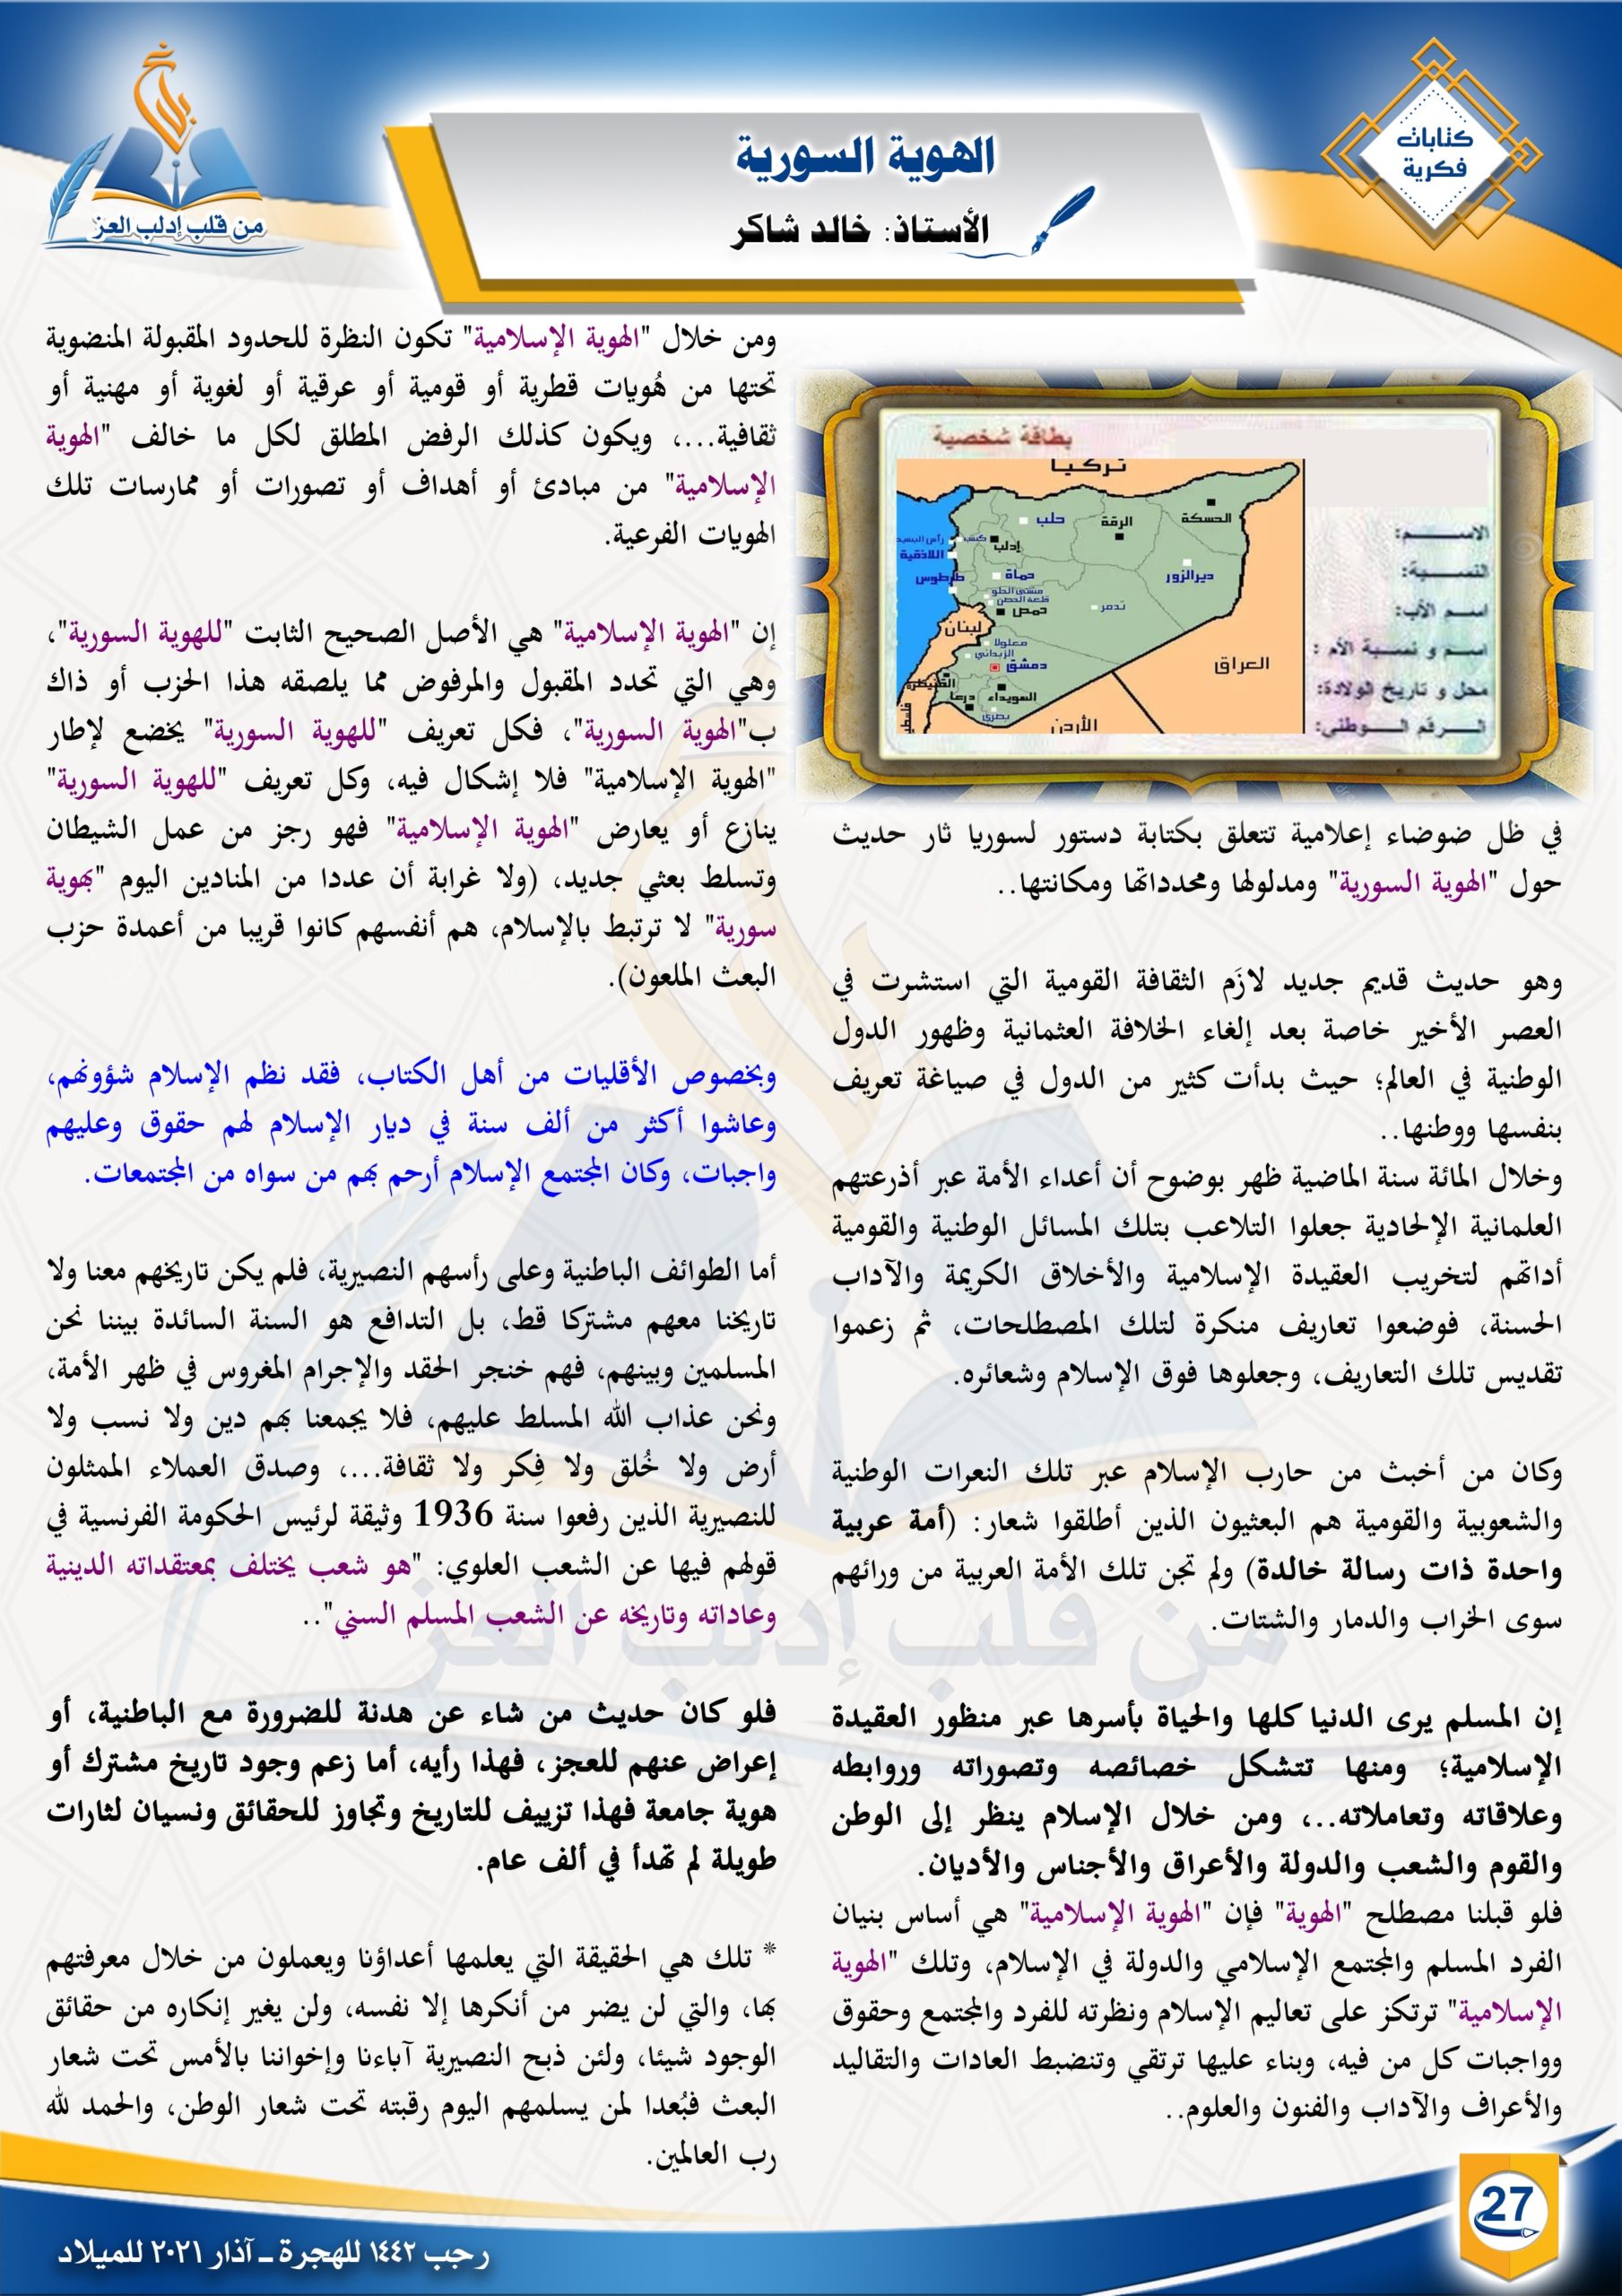  الهوية السورية ||كتابات فكرية || مجلة بلاغ العدد ٢١ رجب ١٤٤٢ 